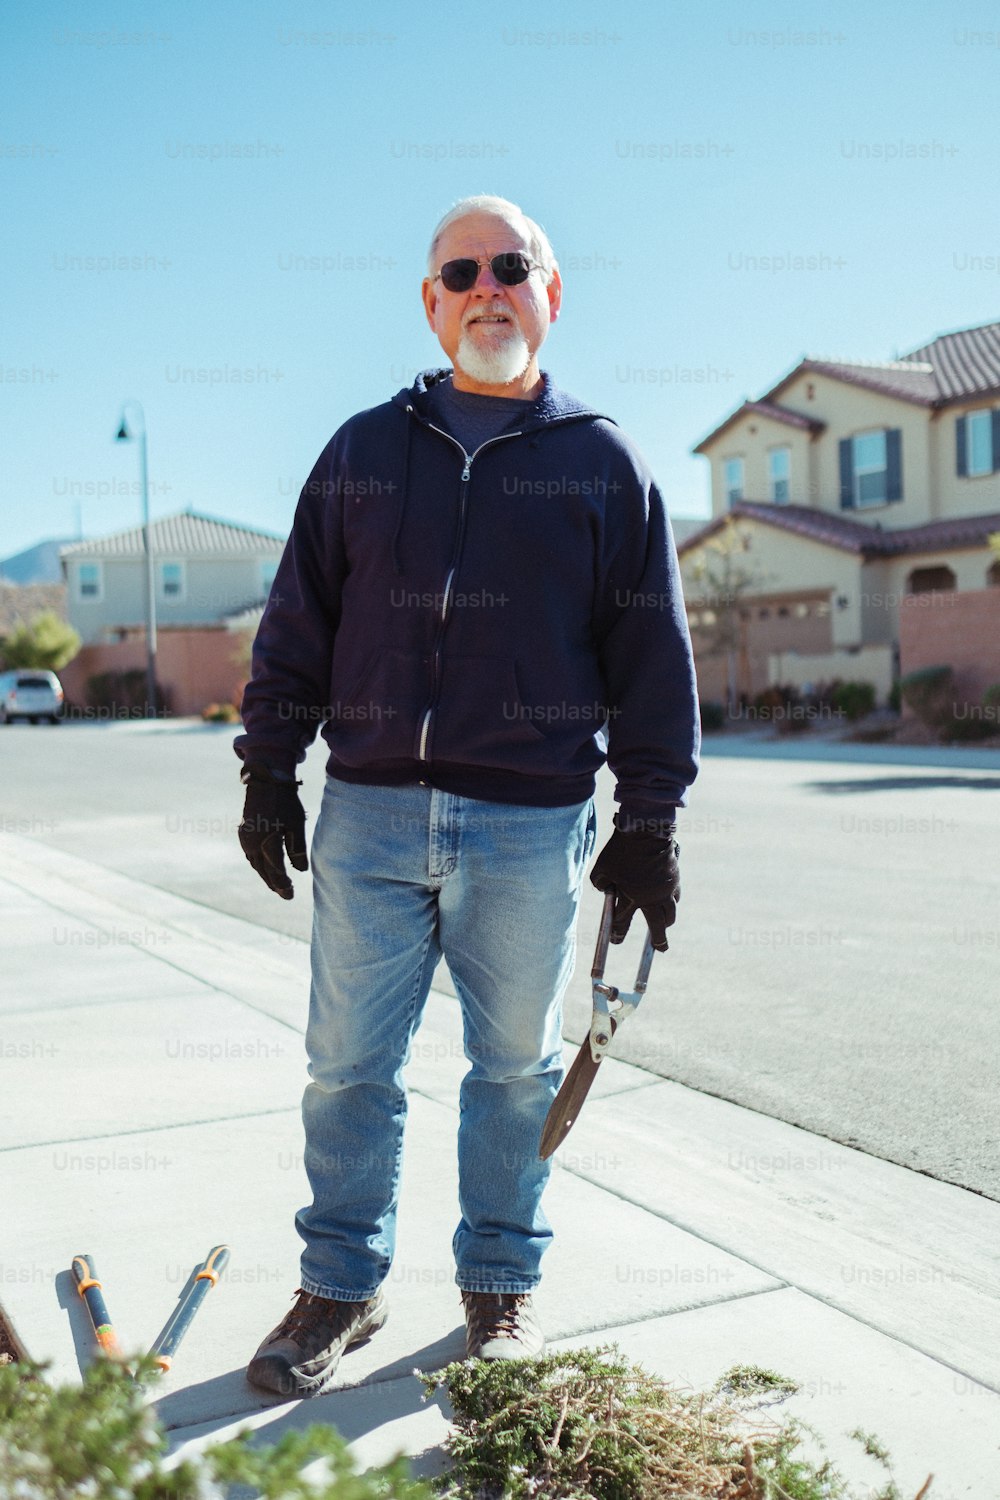 Ein Mann steht mit einer Schaufel auf einem Bürgersteig